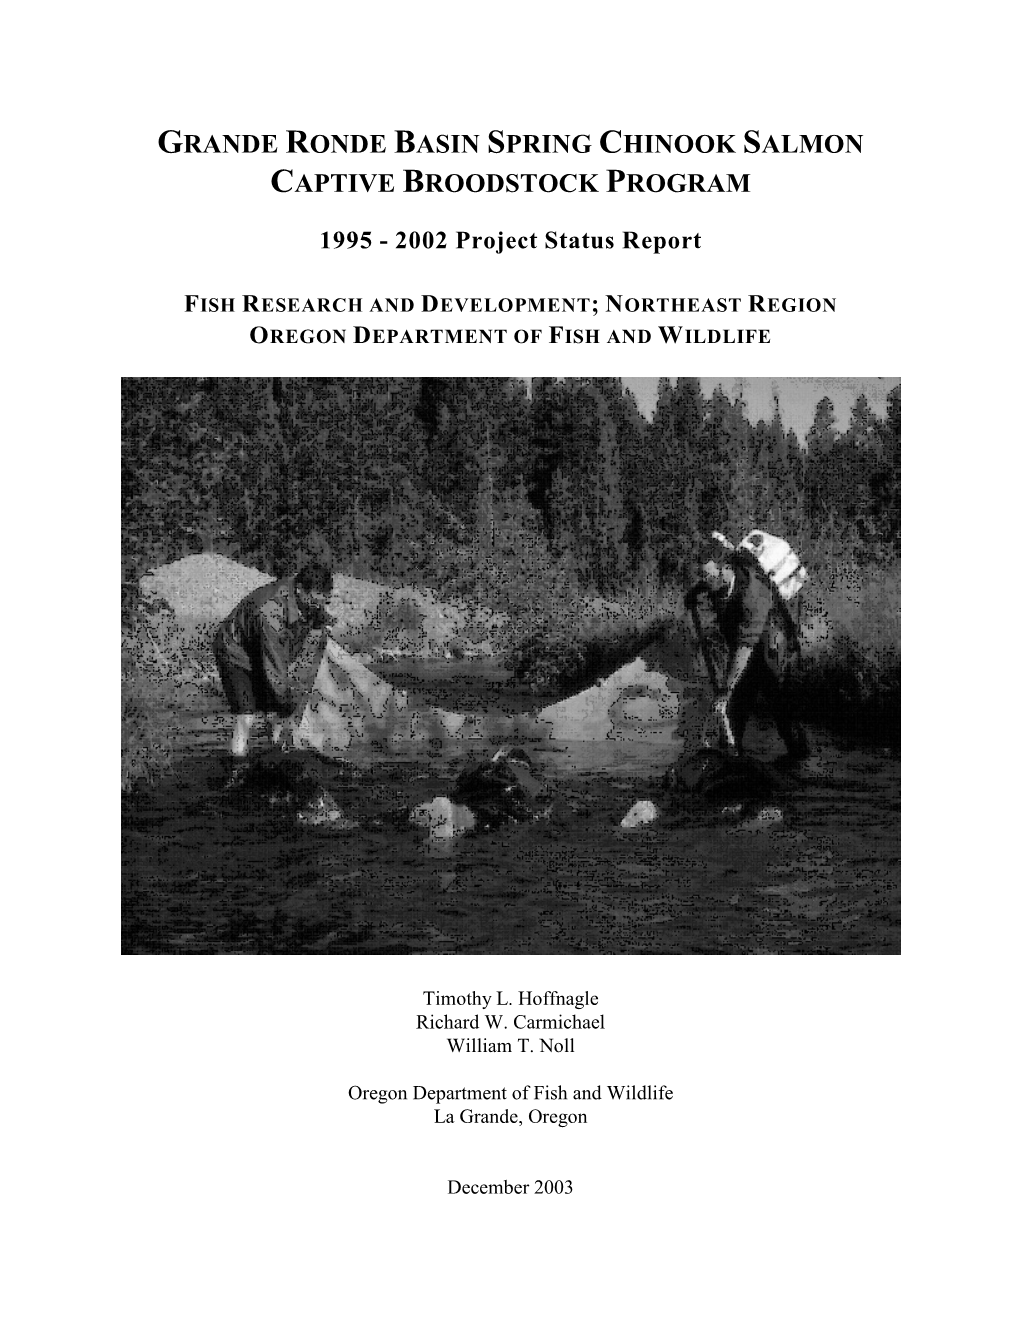 Grande Ronde Basin Spring Chinook Salmon Captive Broodstock Program